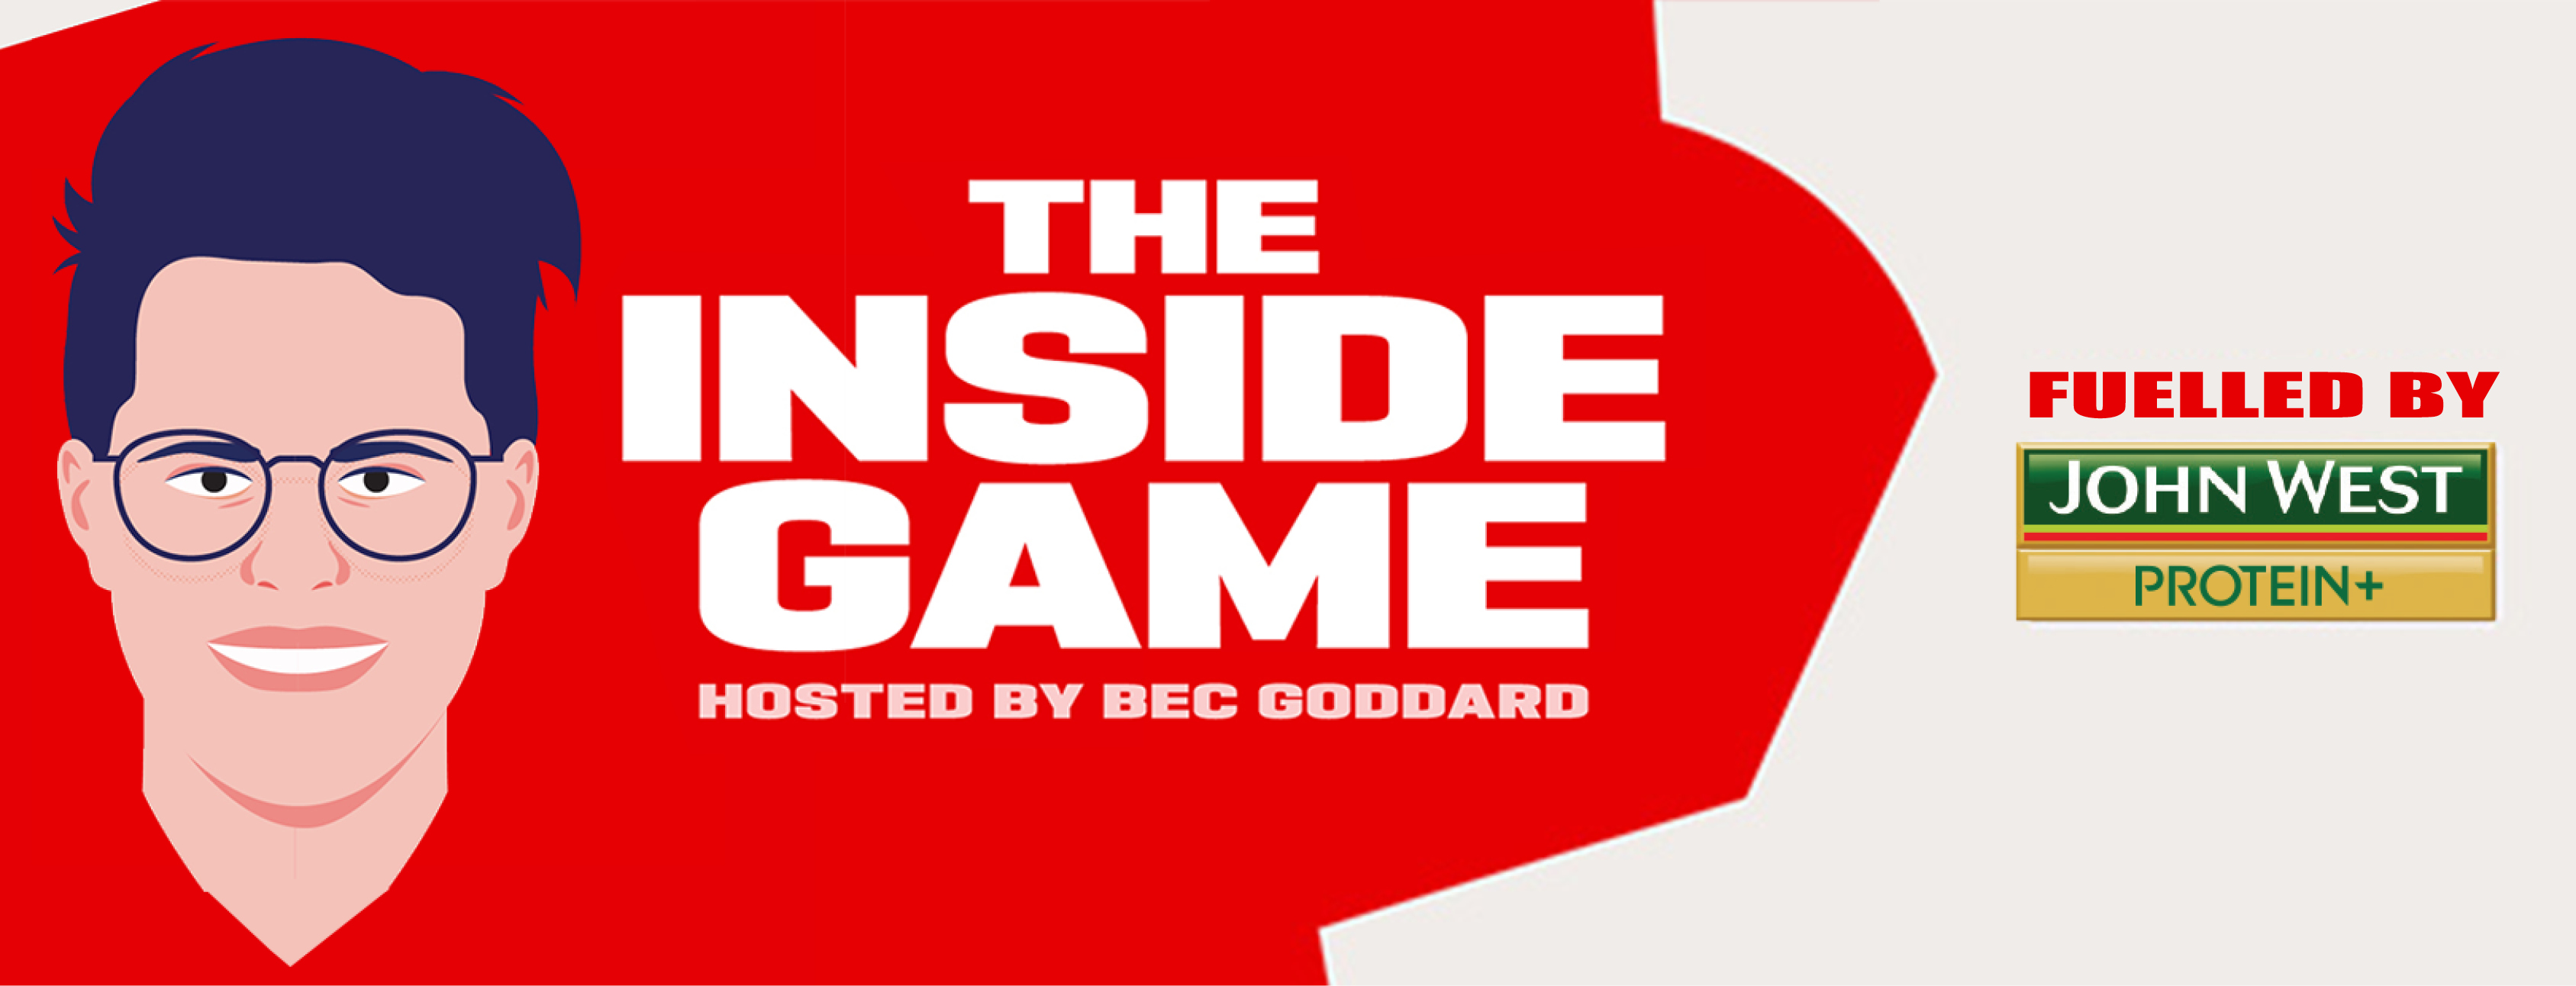 The Inside Game Desktop Banner Image